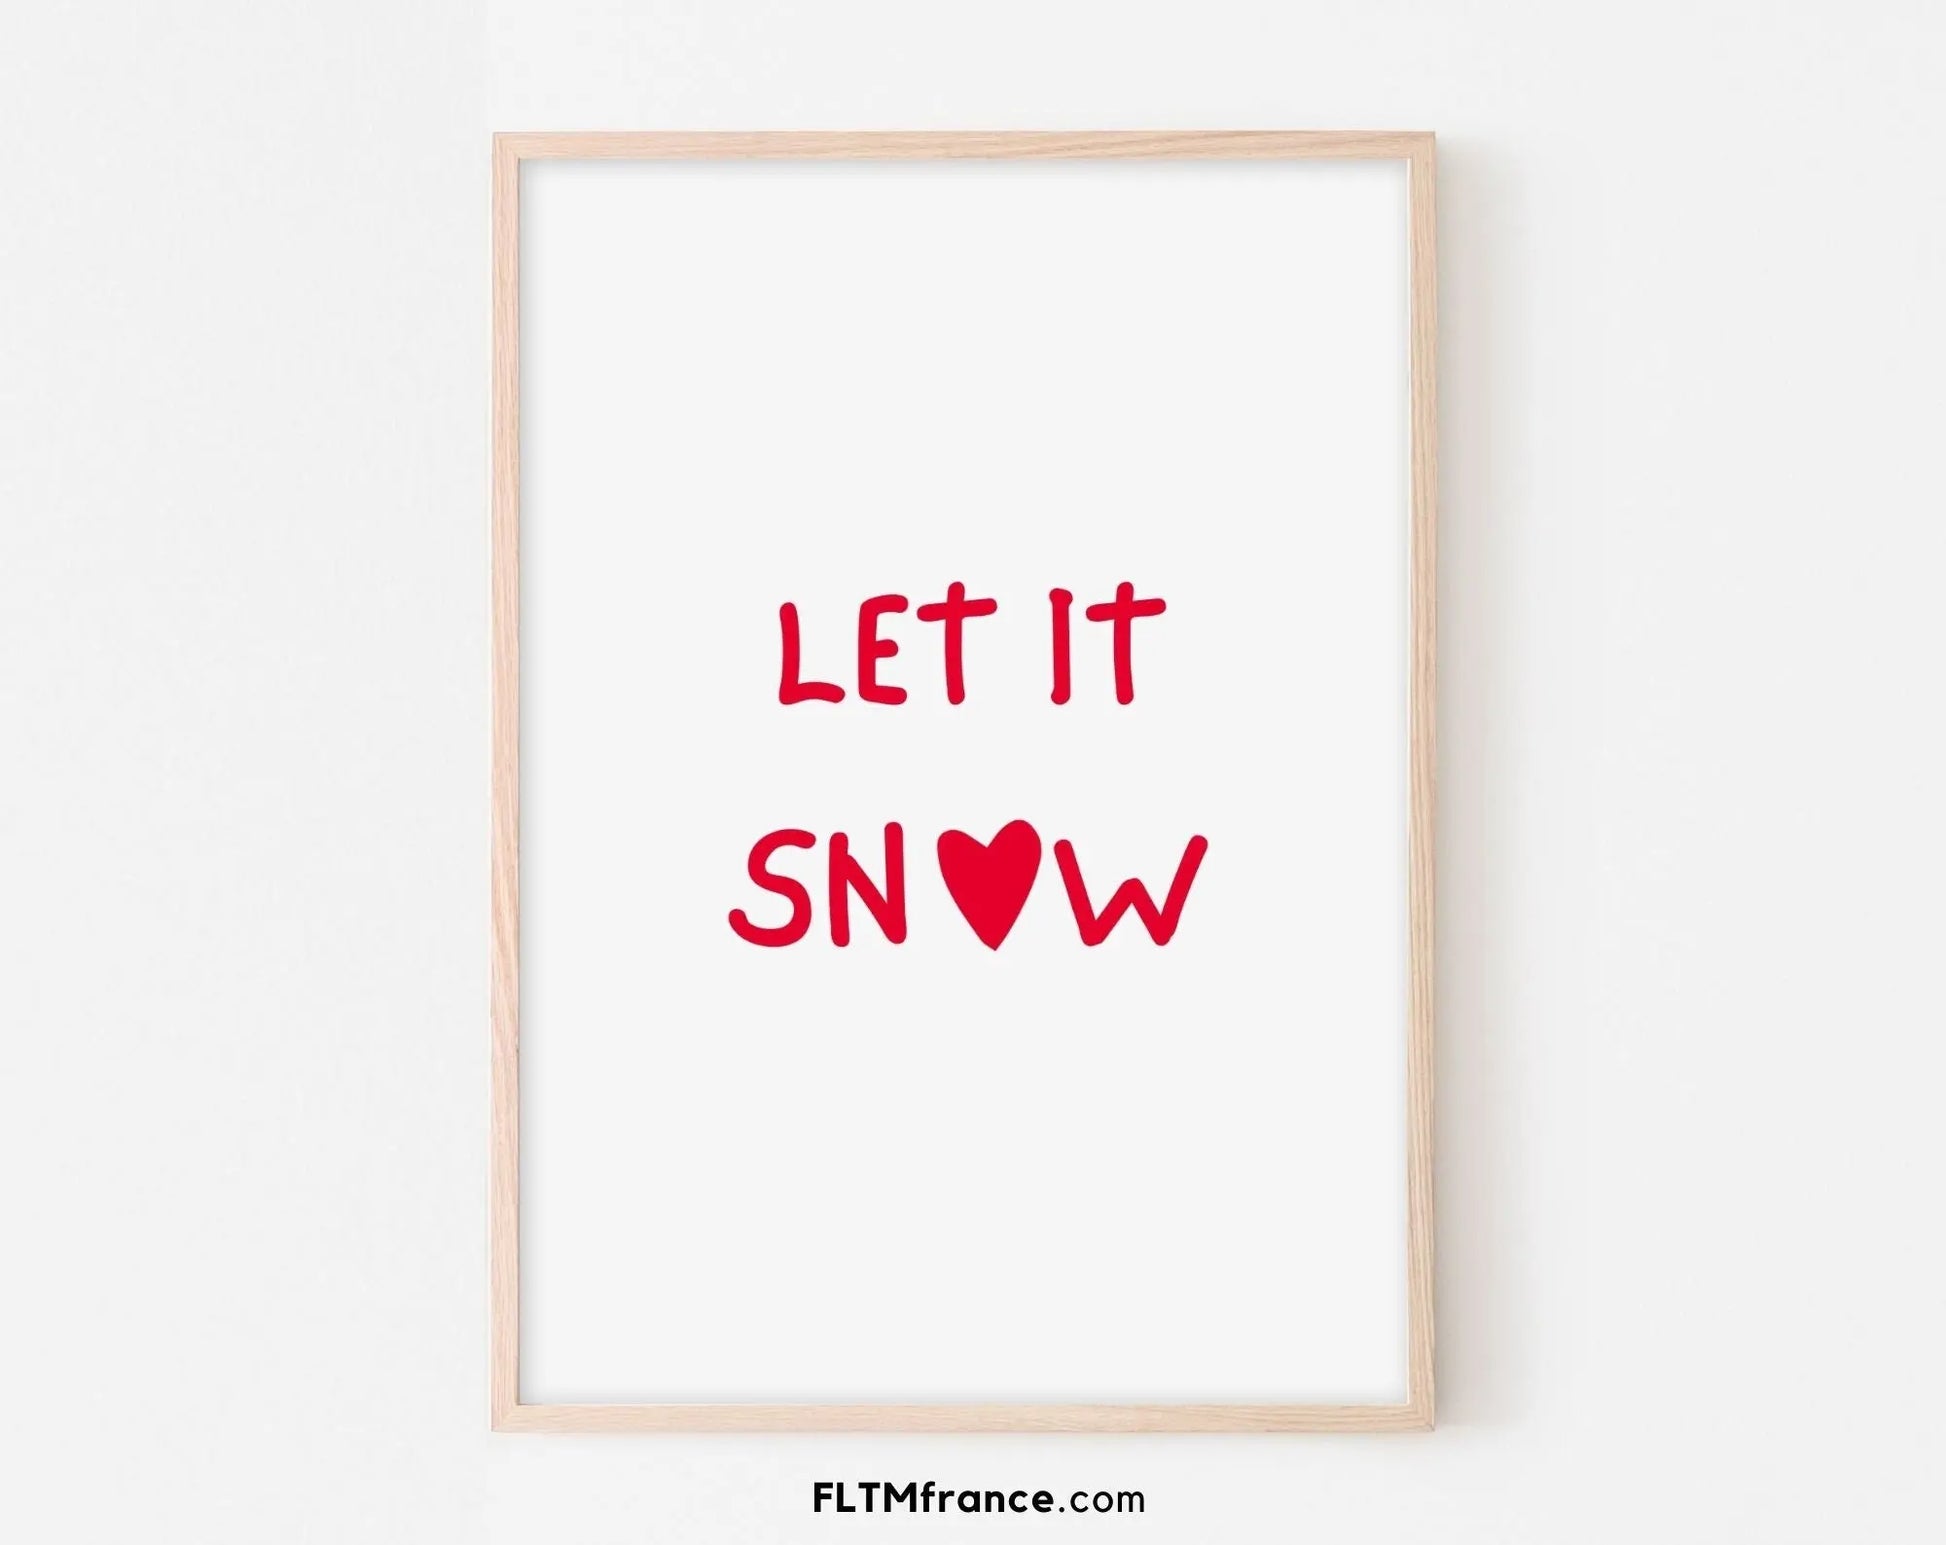 Let it snow affiche - Décoration de noël FLTMfrance